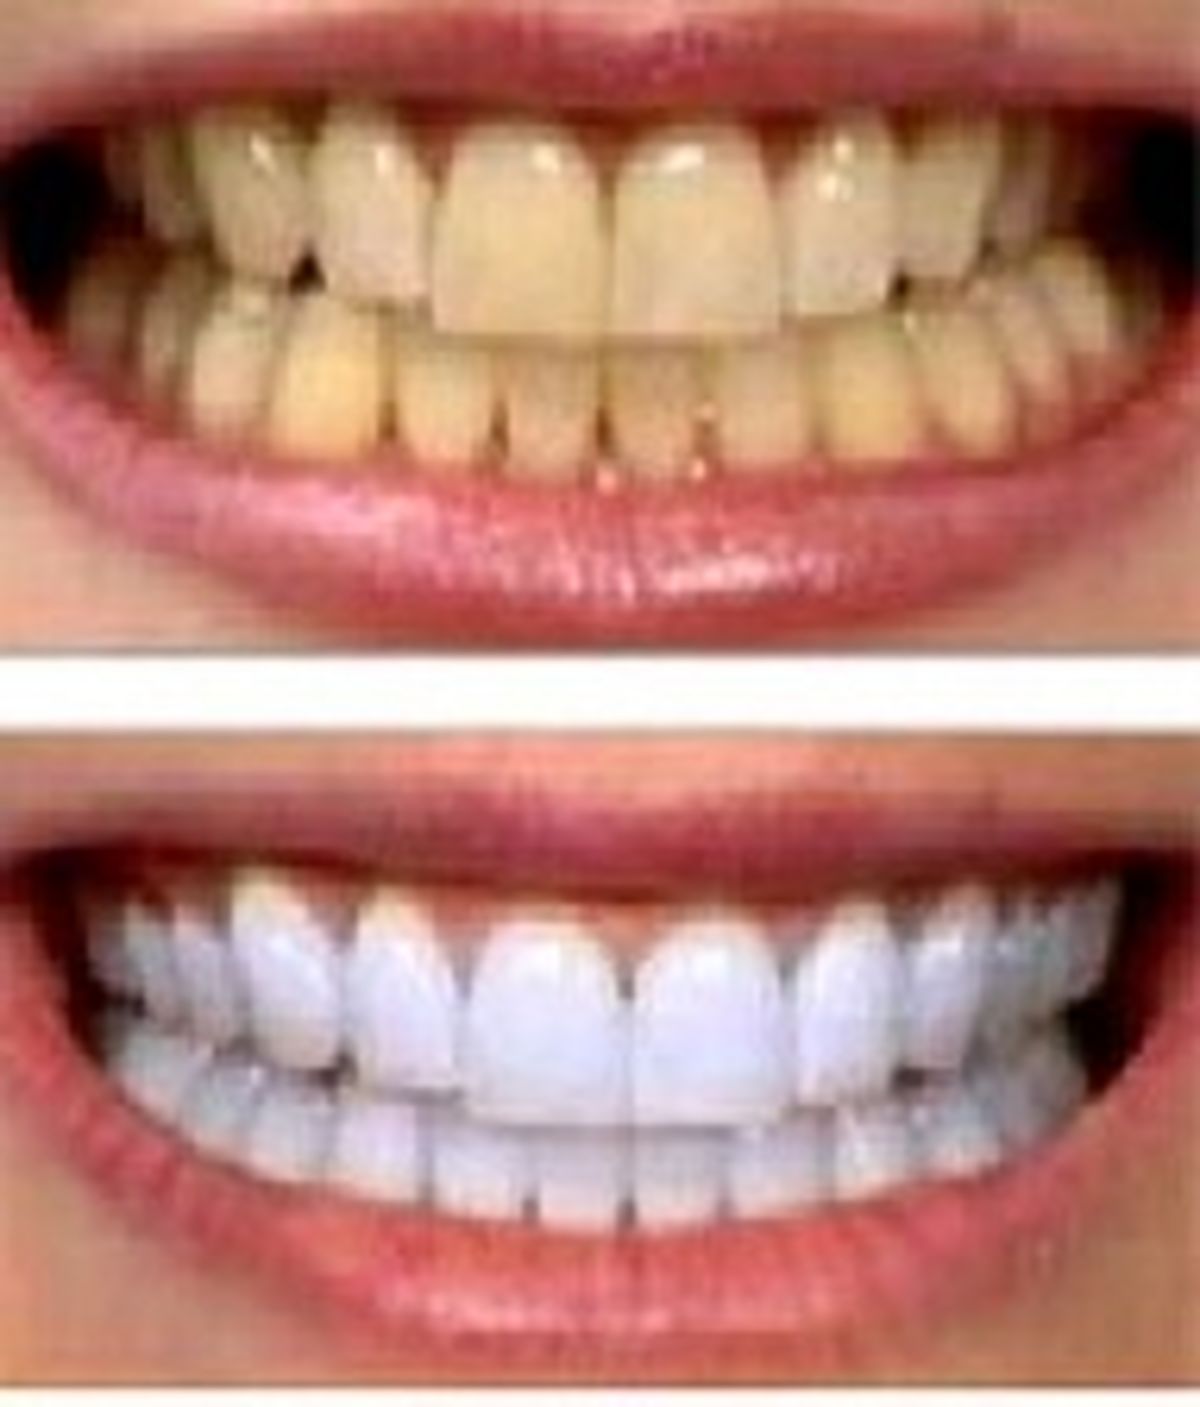 زردی دندان ها را چگونه برطرف کنیم ؟